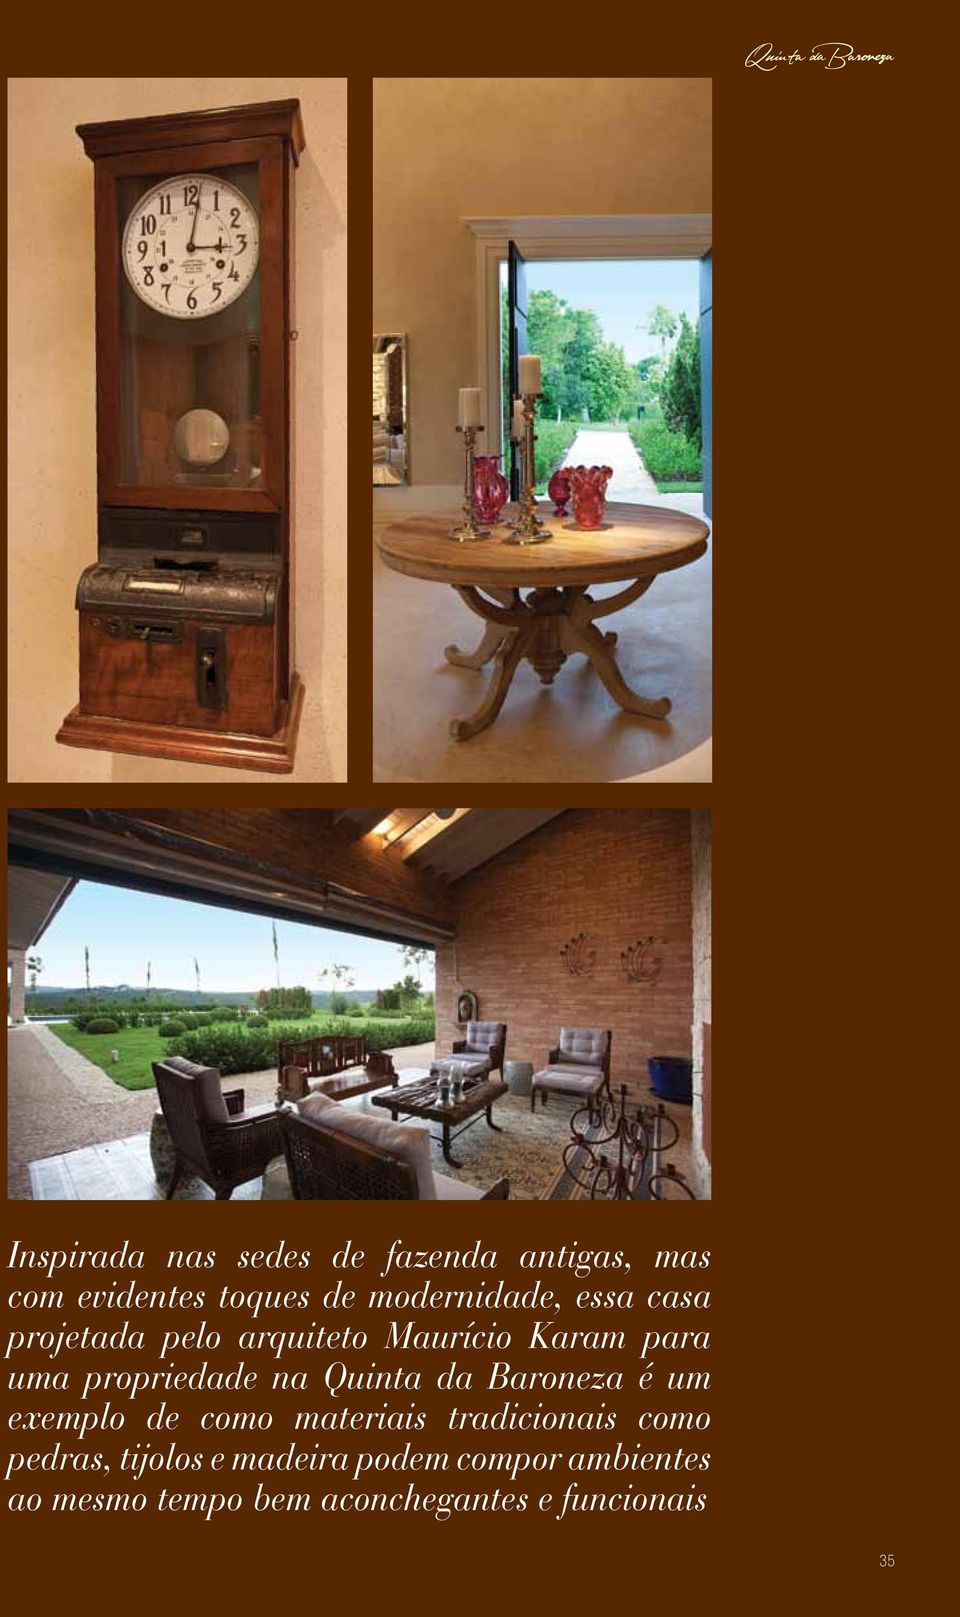 propriedade na Quinta da Baroneza é um exemplo de como materiais tradicionais